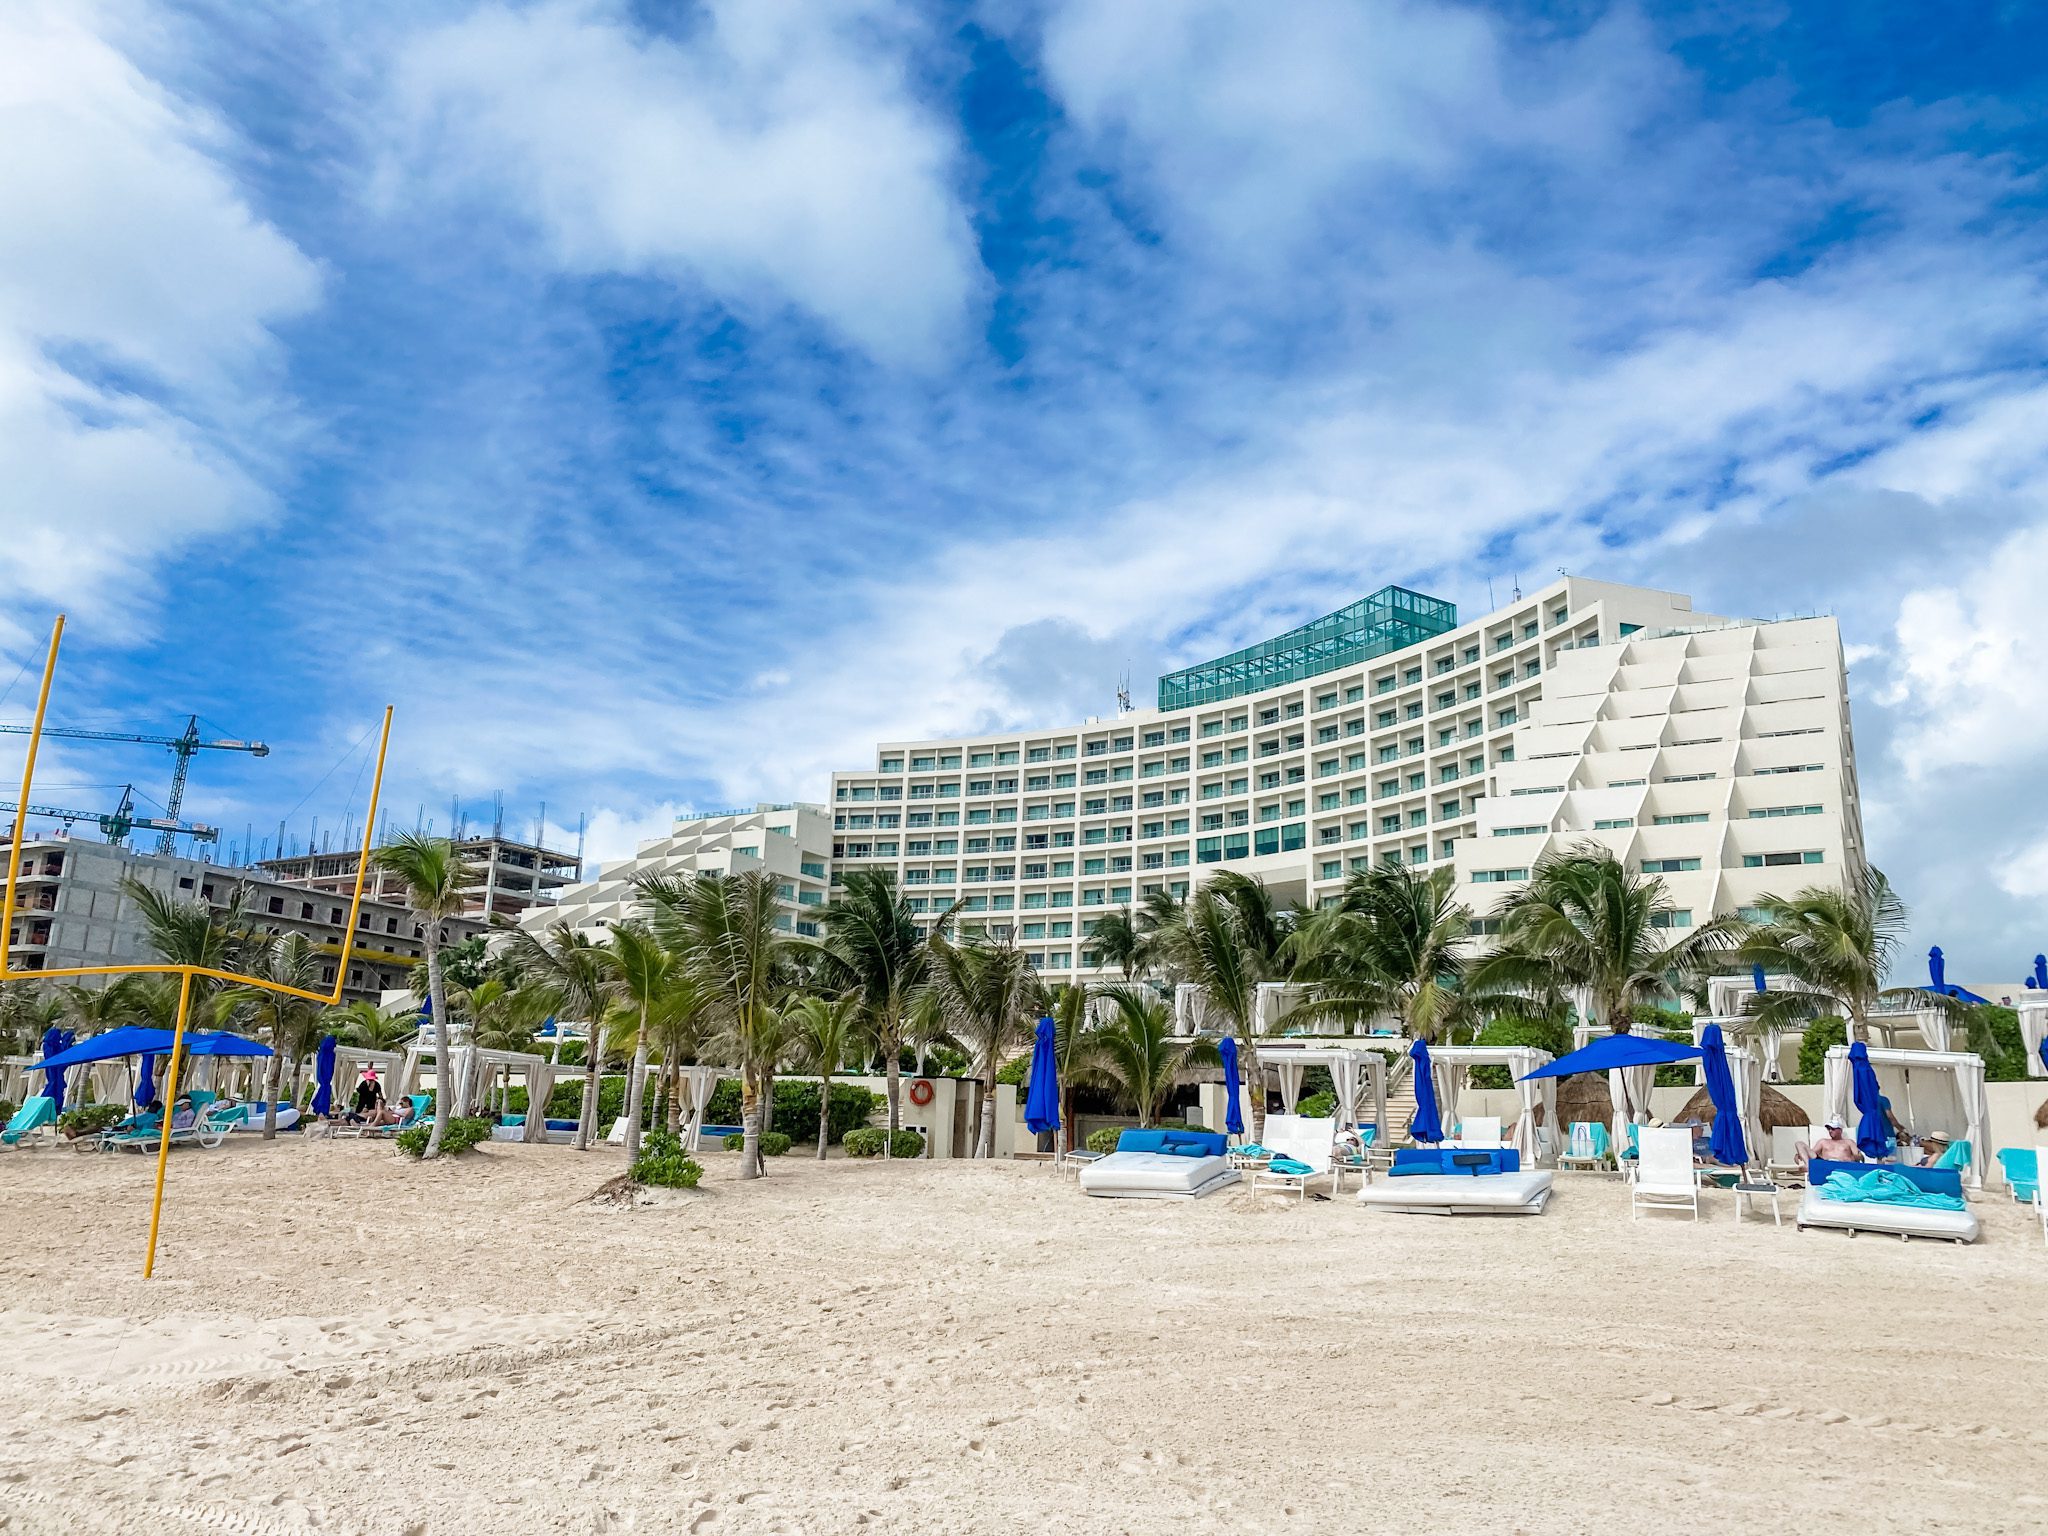 Cancun - Hotel from beach